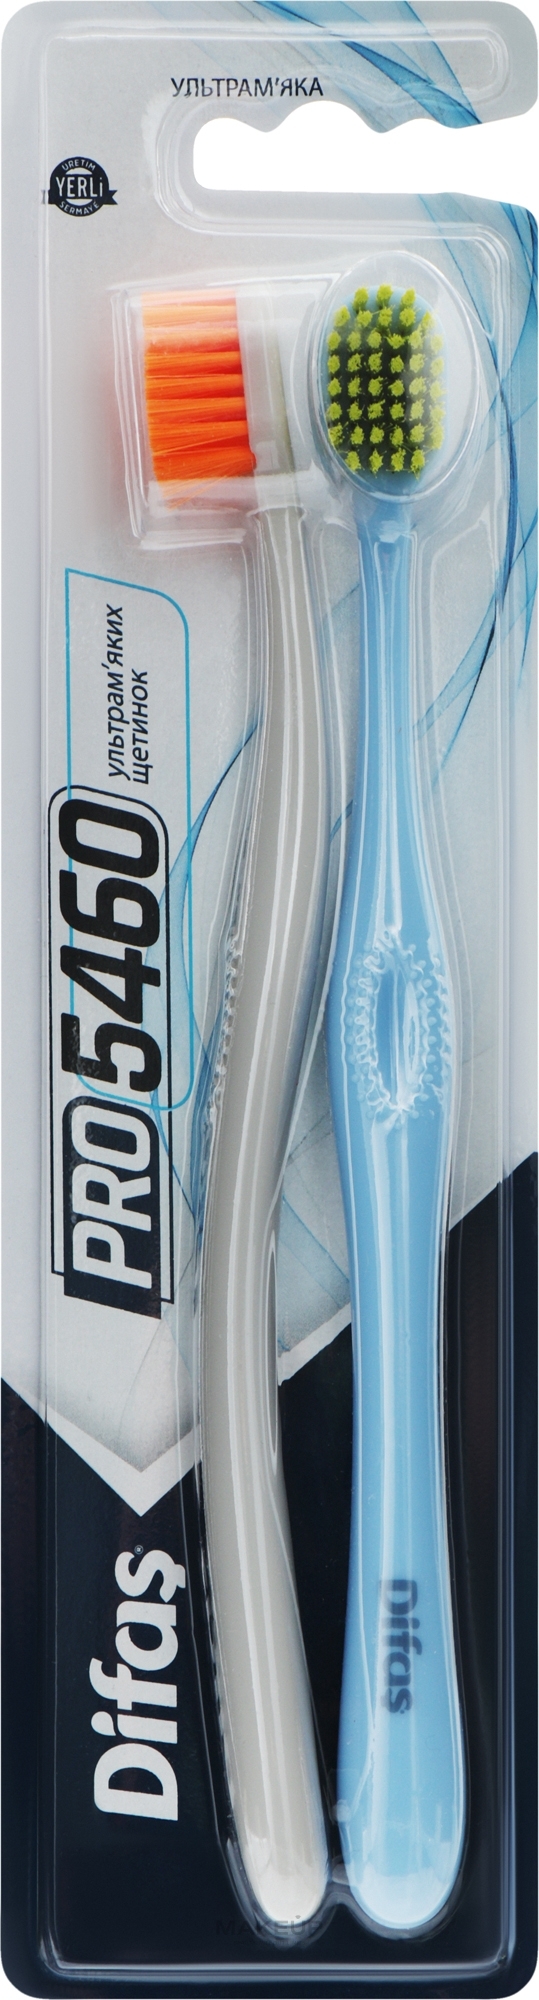 Набор зубных щеток "Ultra Soft", серая + голубая - Difas PRO 5460 — фото 2шт